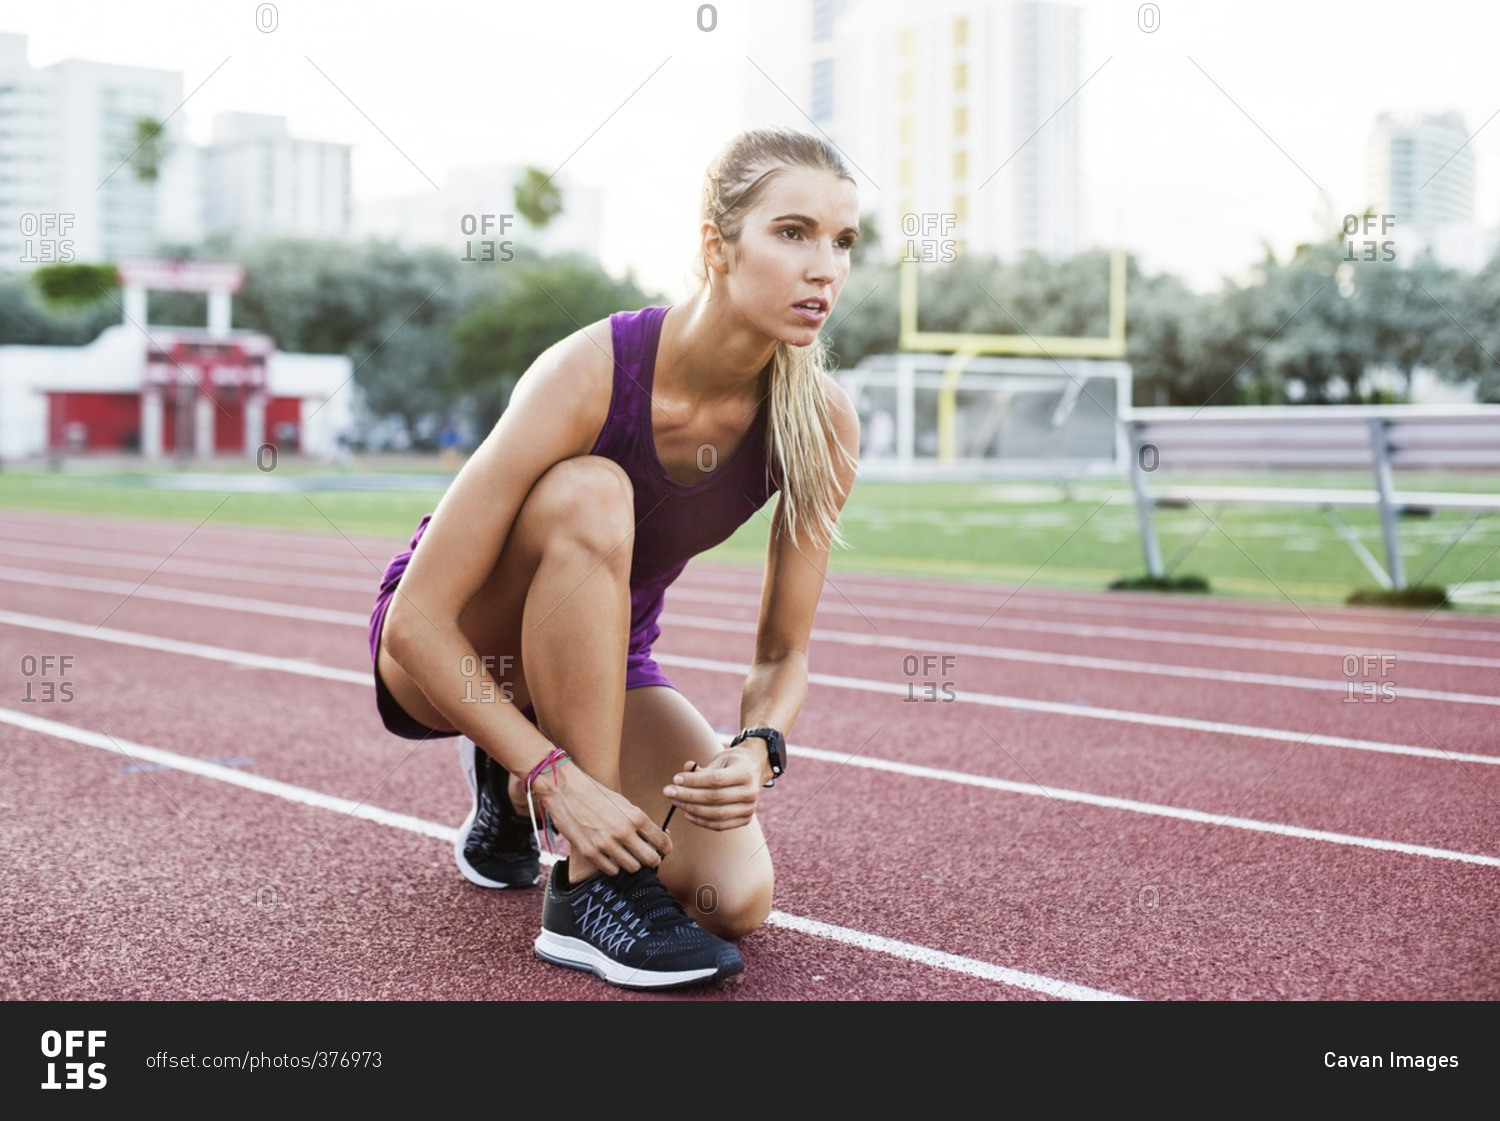 Confident female athlete tying shoelace on race tracks